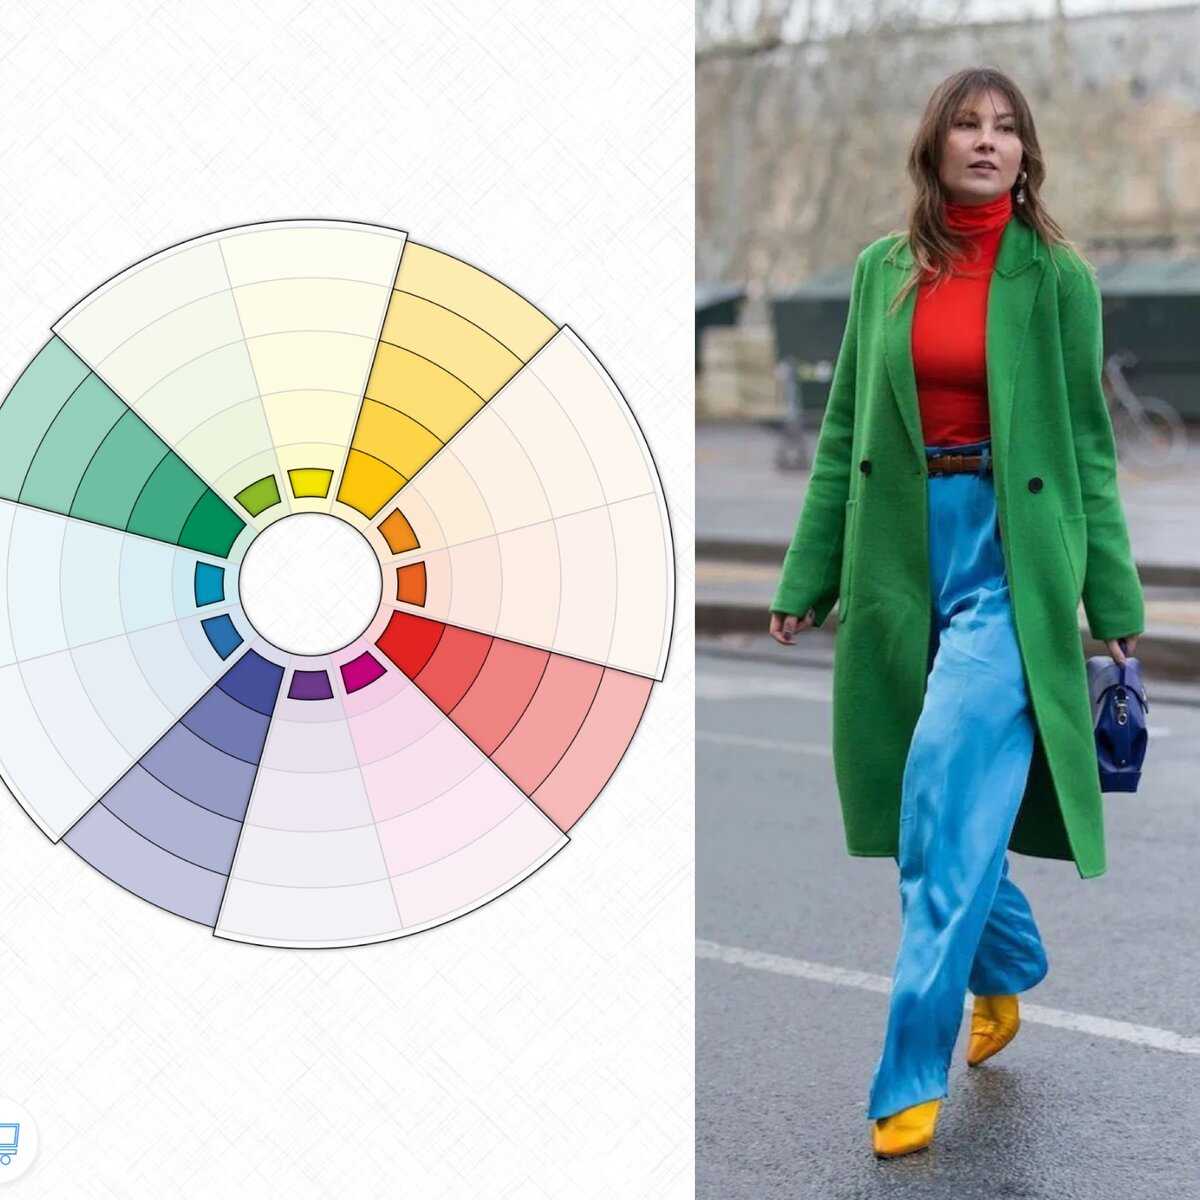 Цветовой круг сочетание цветов в одежде фото